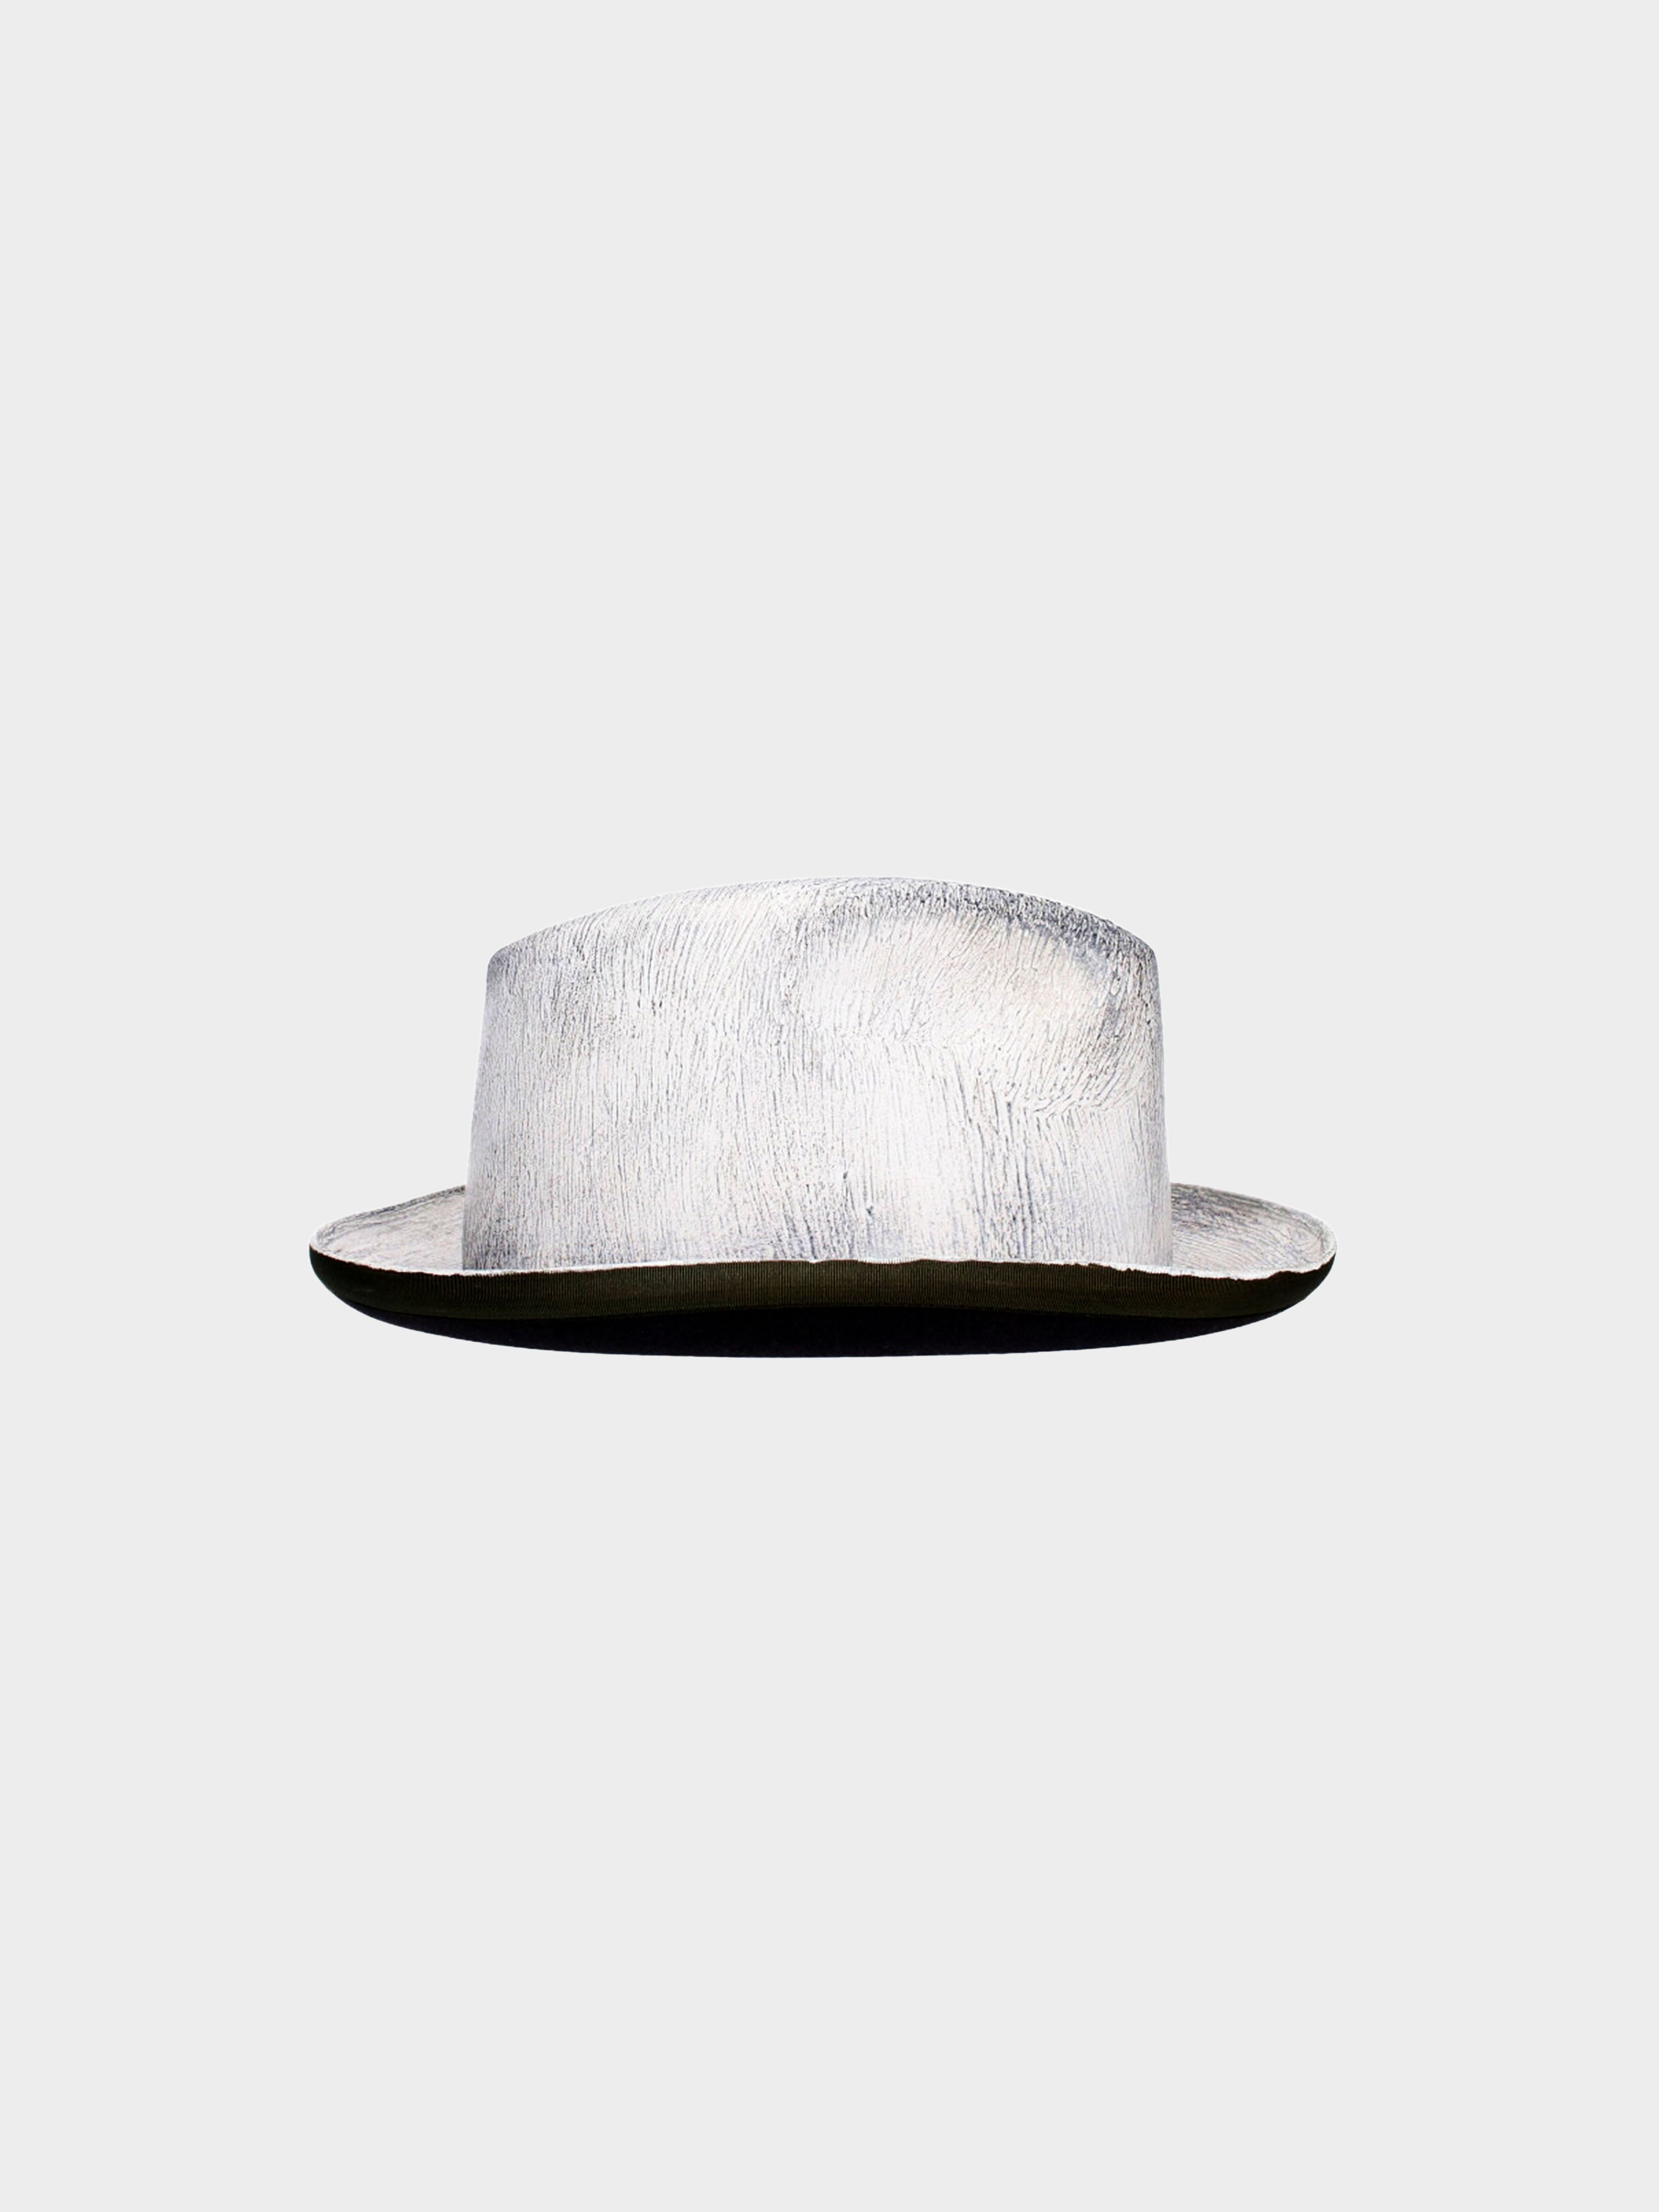 Maison Martin Margiela FW 2000 White Painted Artisanal Hat